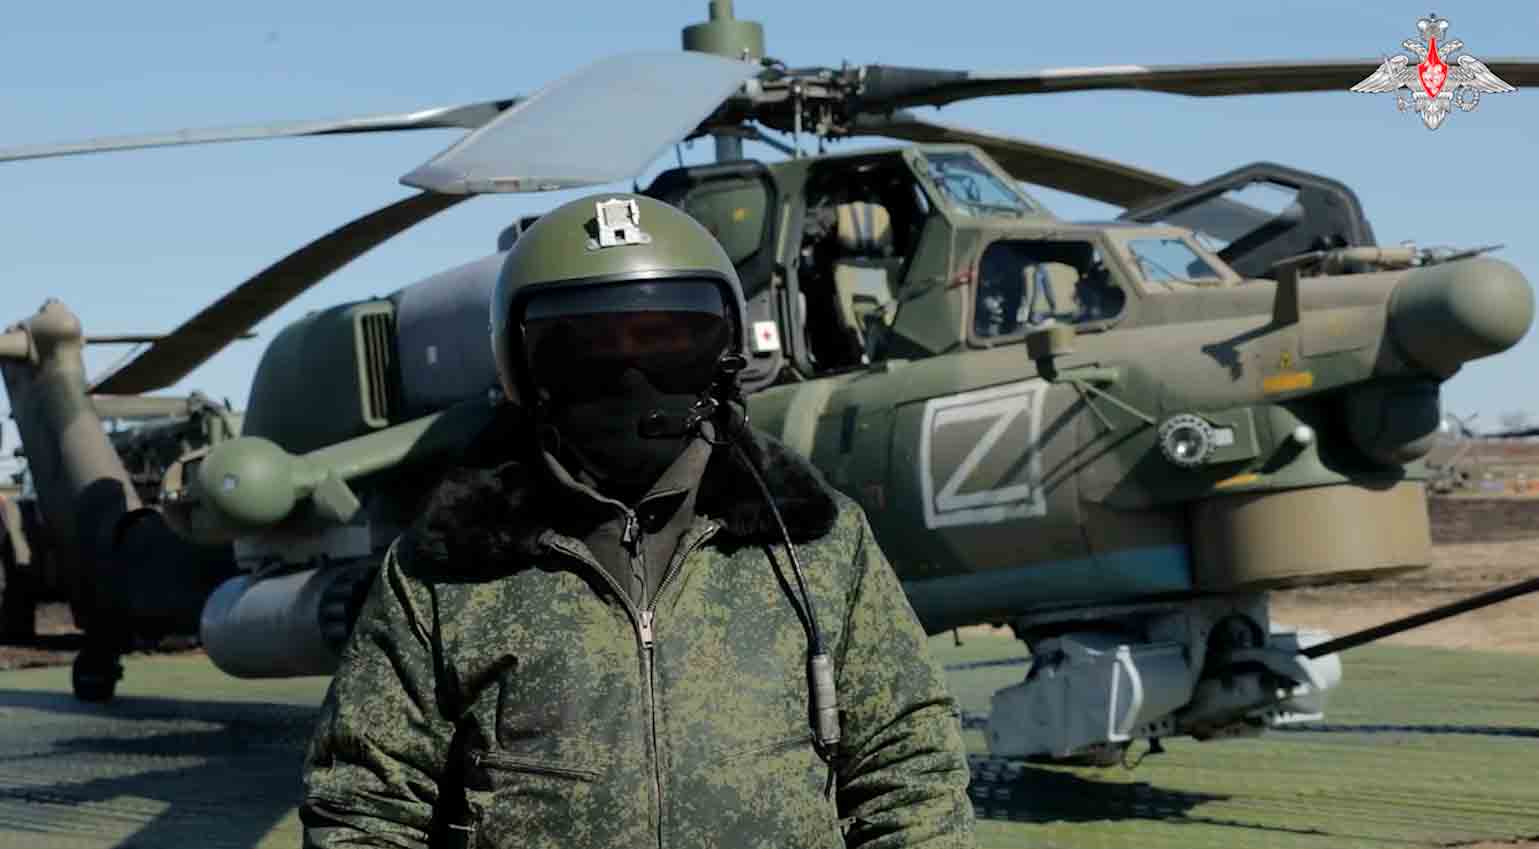 Mi-28. Foto: riproduzione Telegram